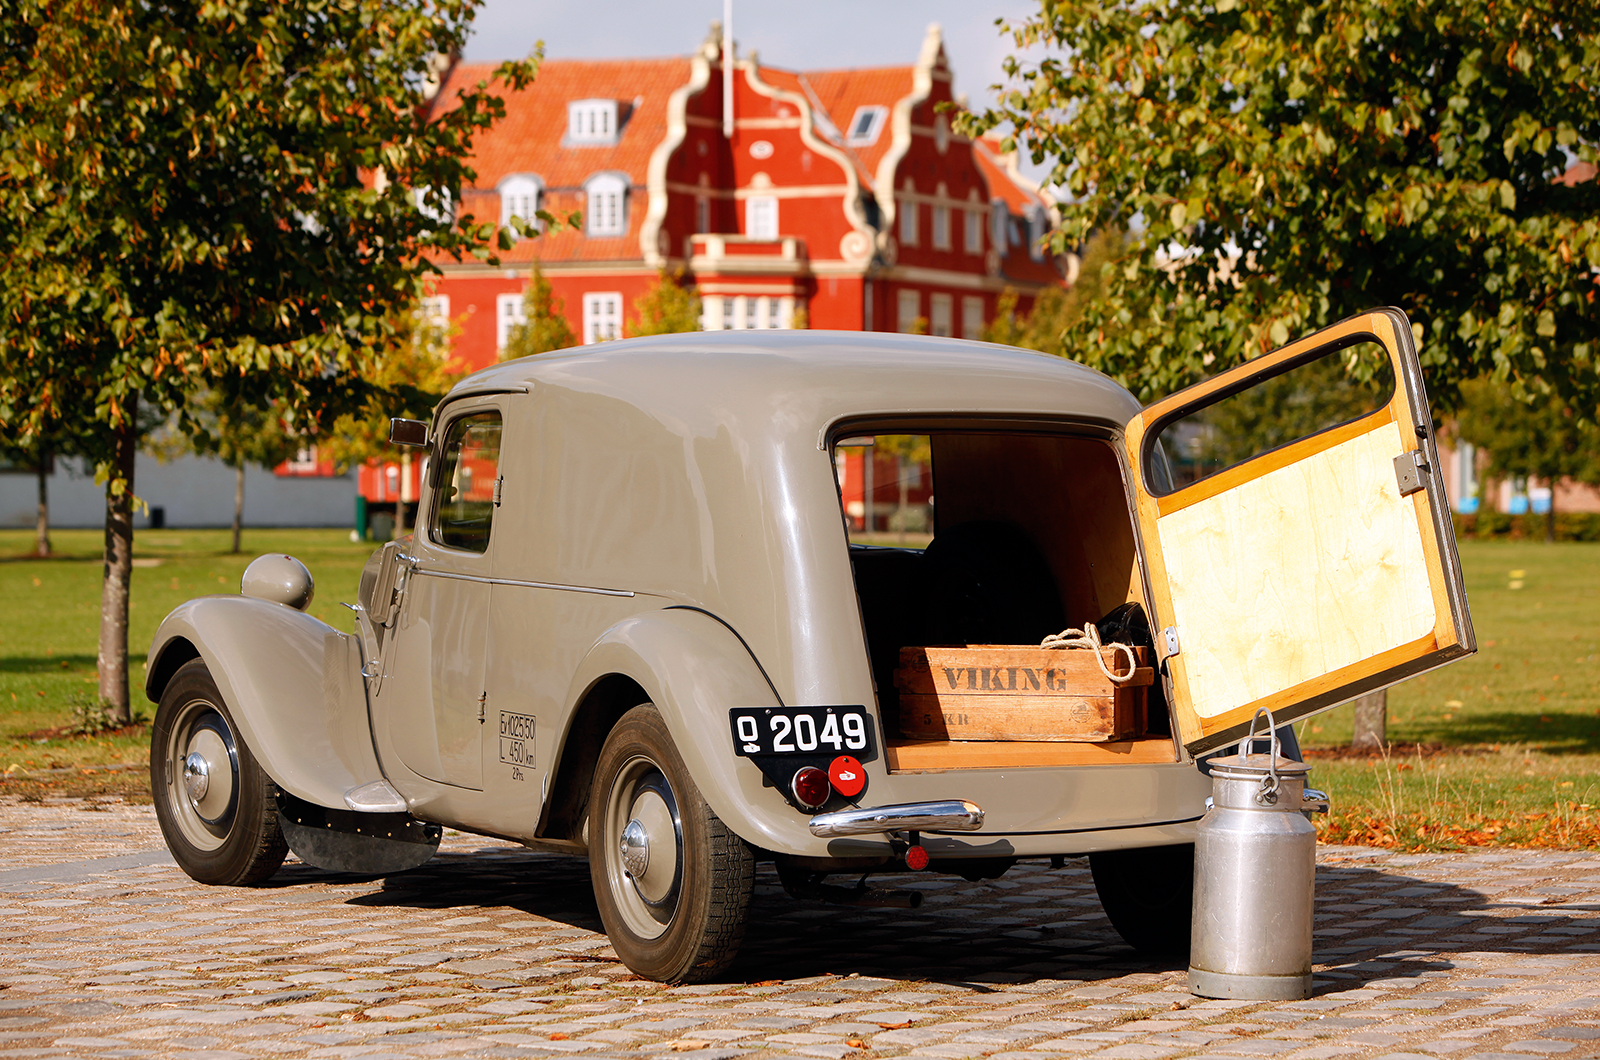 Classic & Sports Car – Citroën Traction Avant camionnette: van extraordinaire